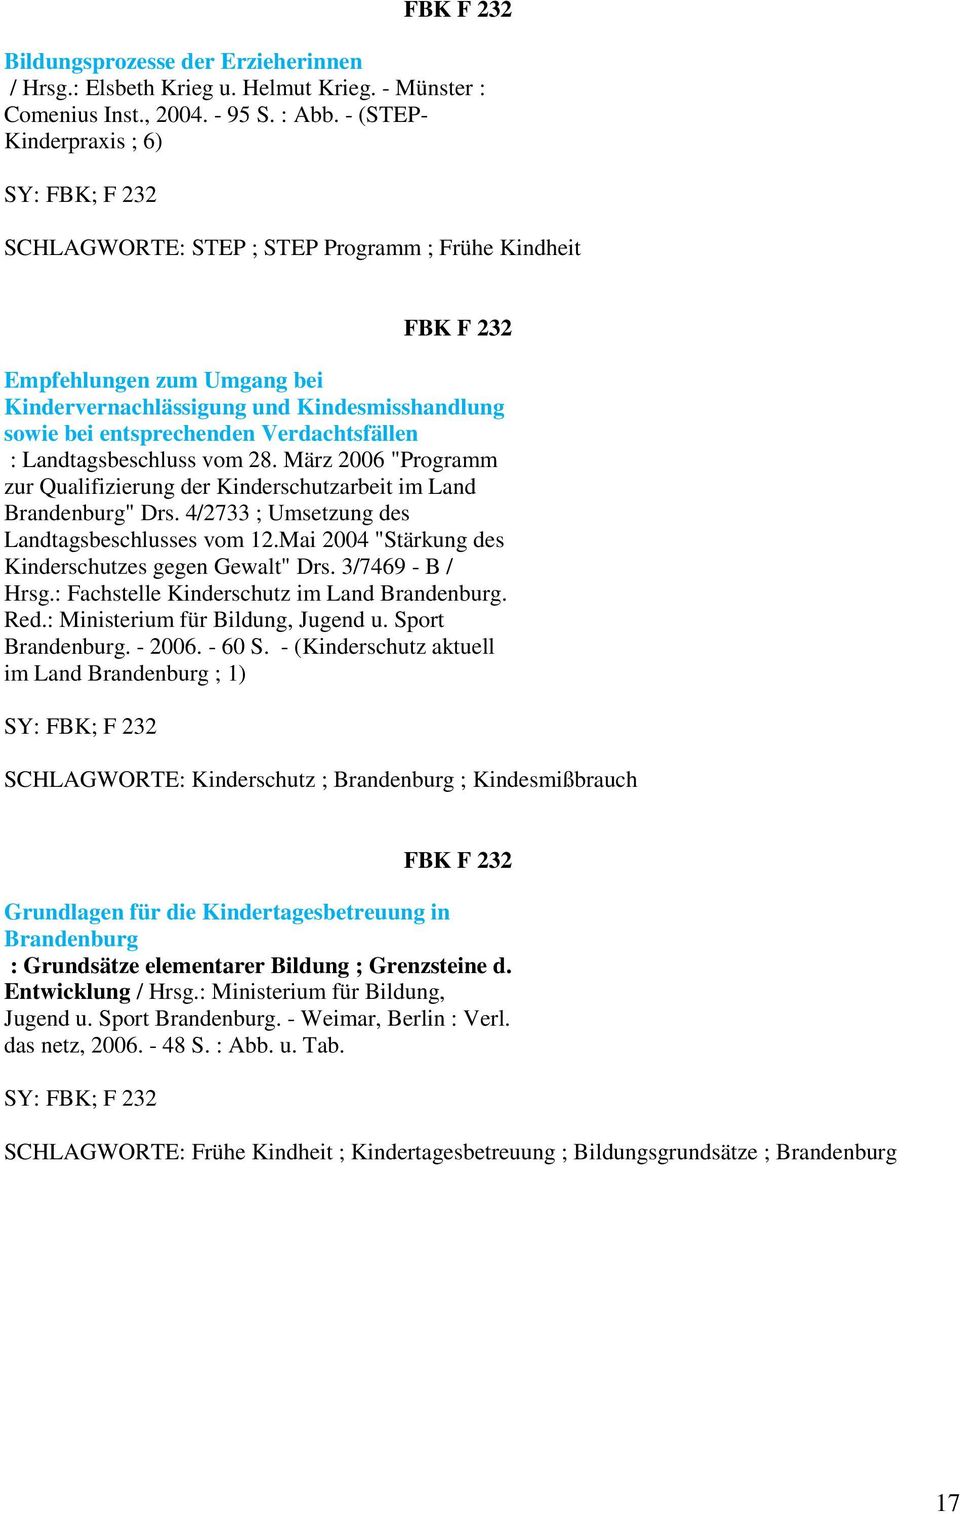 Landtagsbeschluss vom 28. März 2006 "Programm zur Qualifizierung der Kinderschutzarbeit im Land Brandenburg" Drs. 4/2733 ; Umsetzung des Landtagsbeschlusses vom 12.